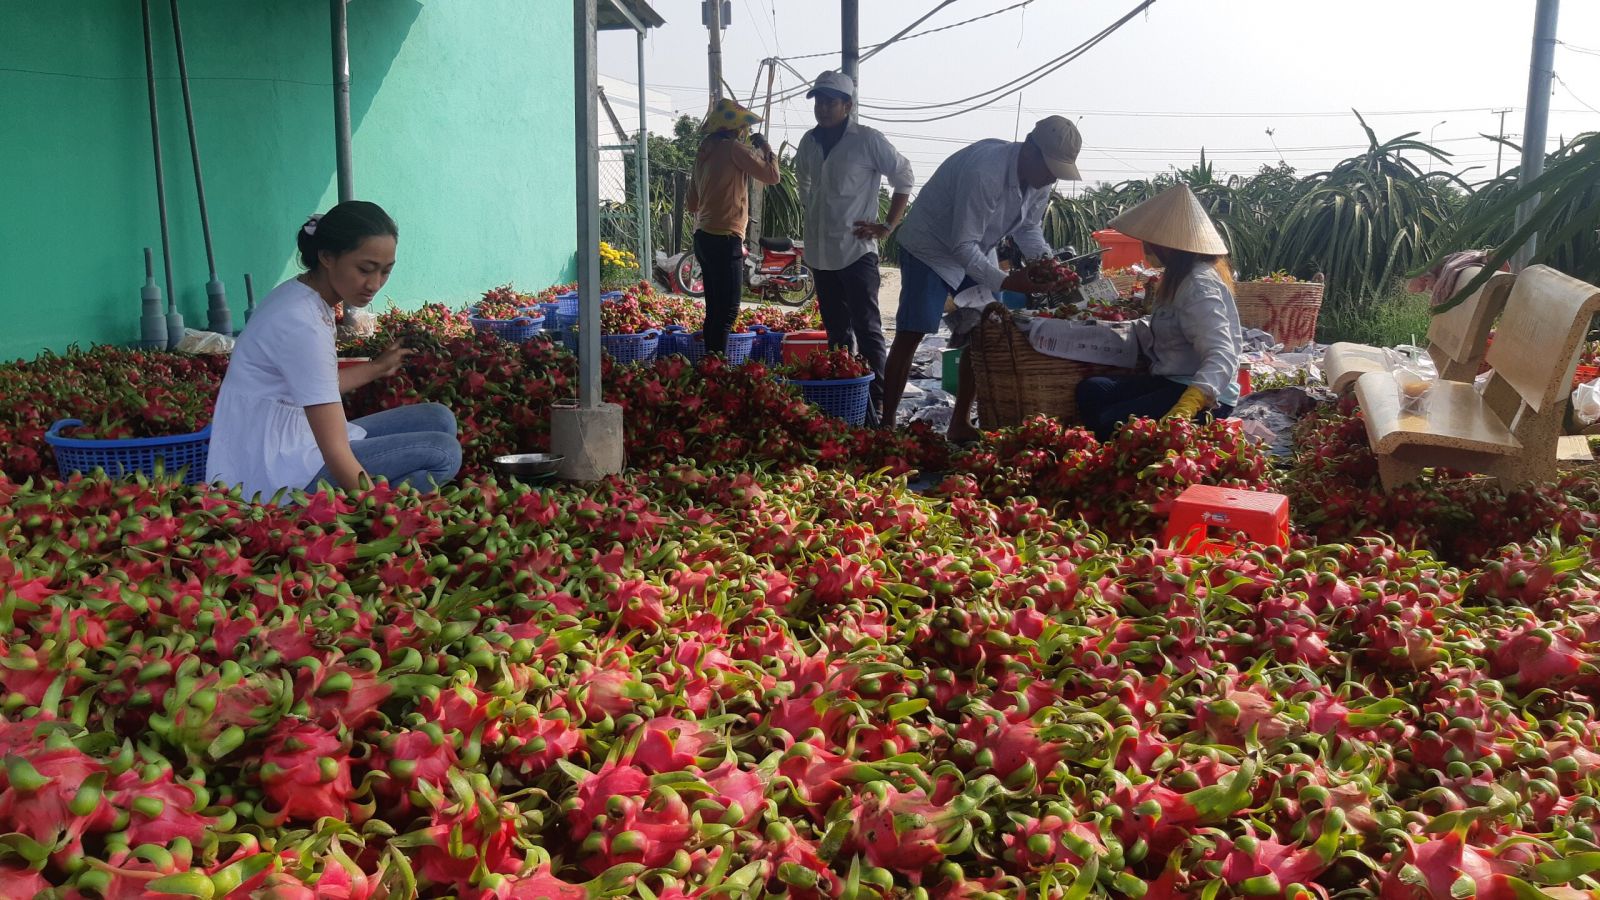 Trung Quốc dự định ngừng nhập khẩu dịp Tết, nông sản Việt Nam tìm đầu ra 